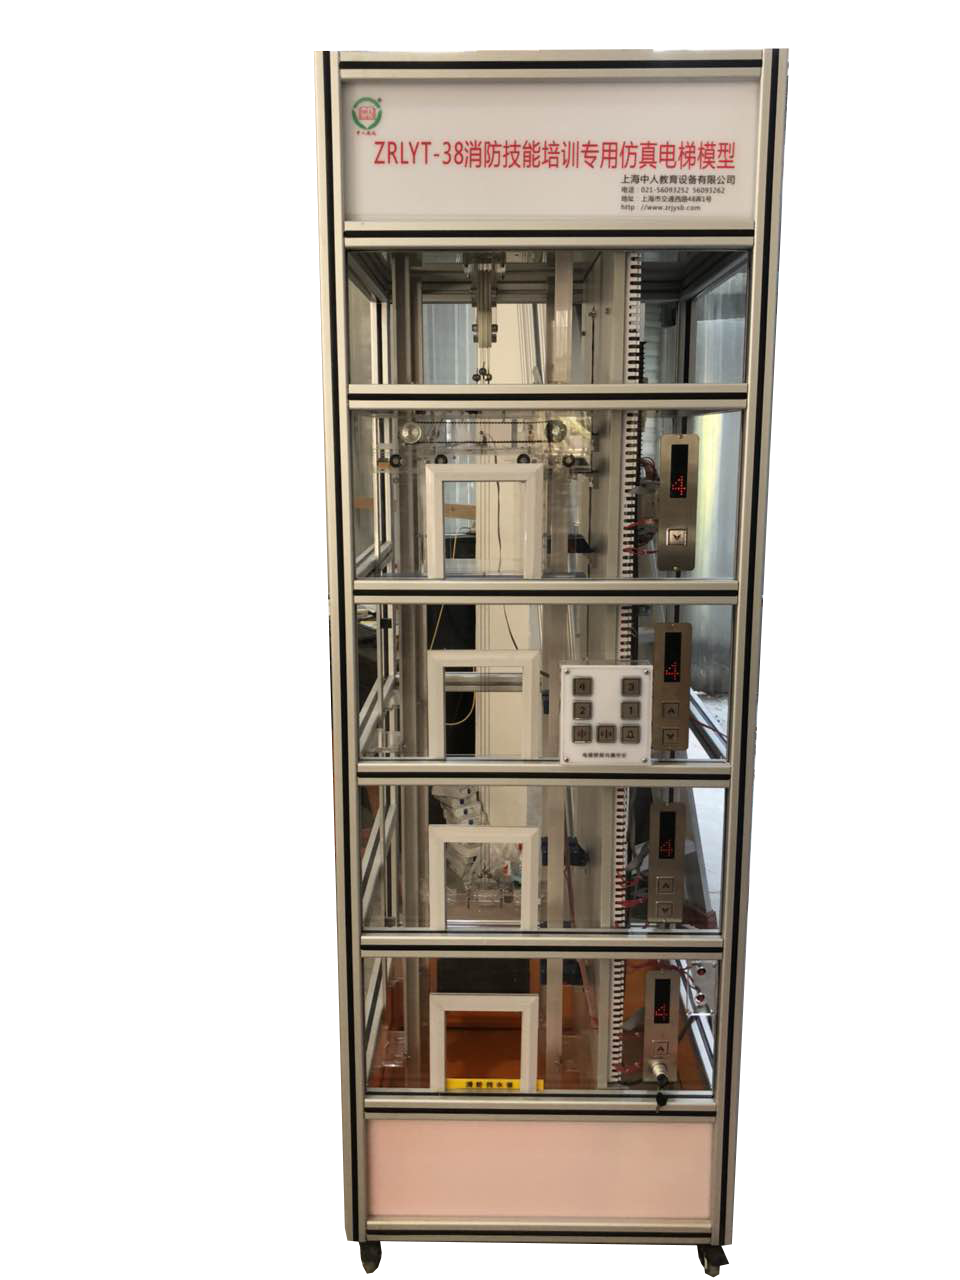 电梯模型,四层透明仿真电梯模型,合用前室电梯模型